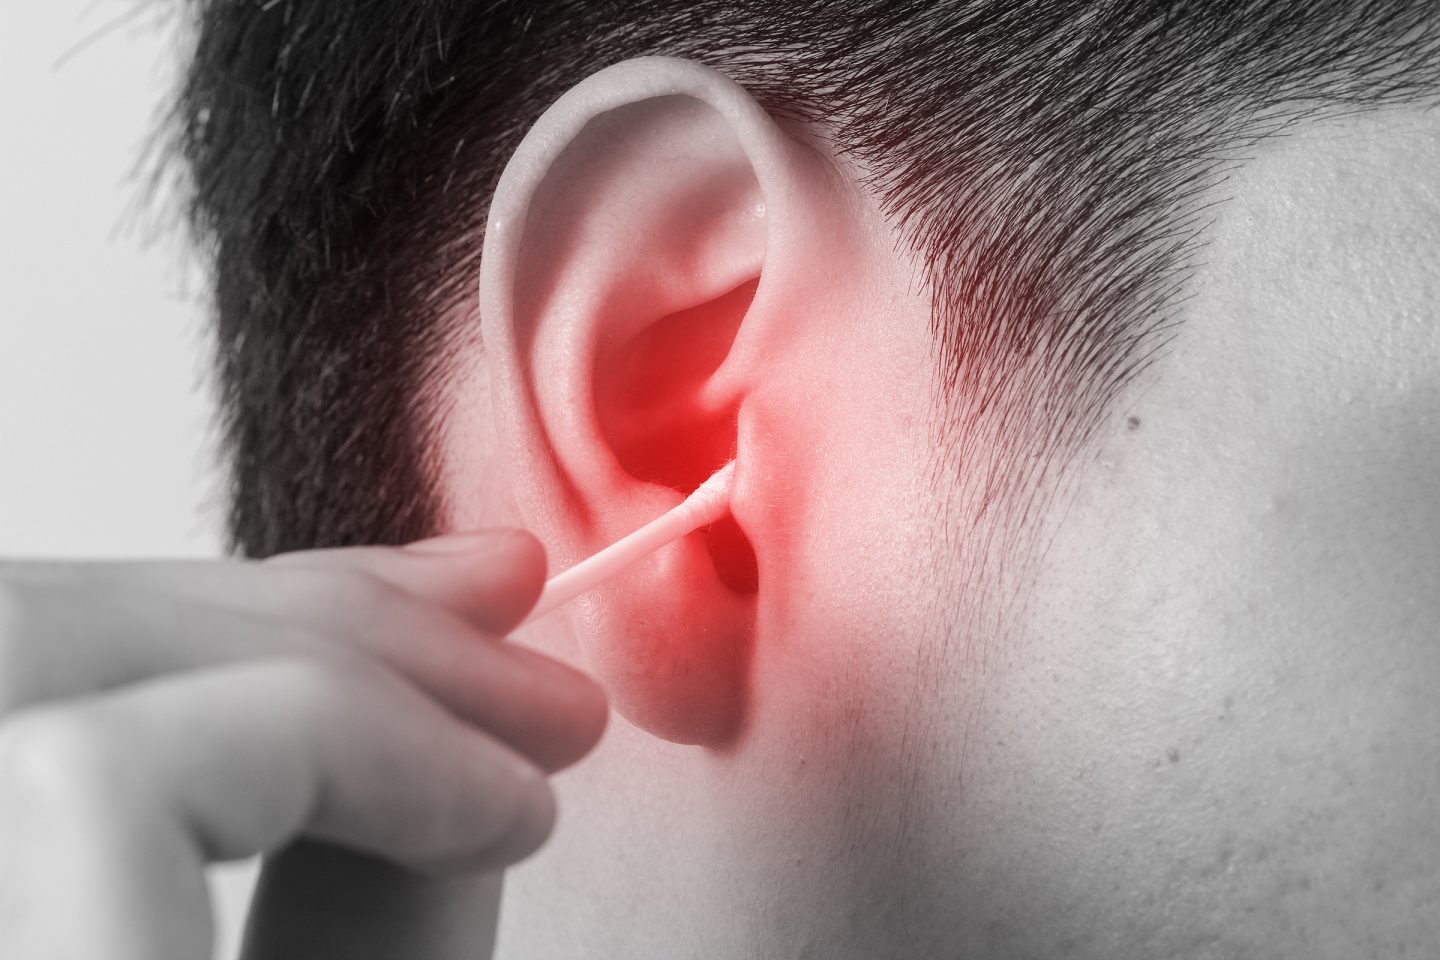 كيف يجب تنظيف الأذن بطريقة آمنة وما المخاطر ودواعي التنظيف؟